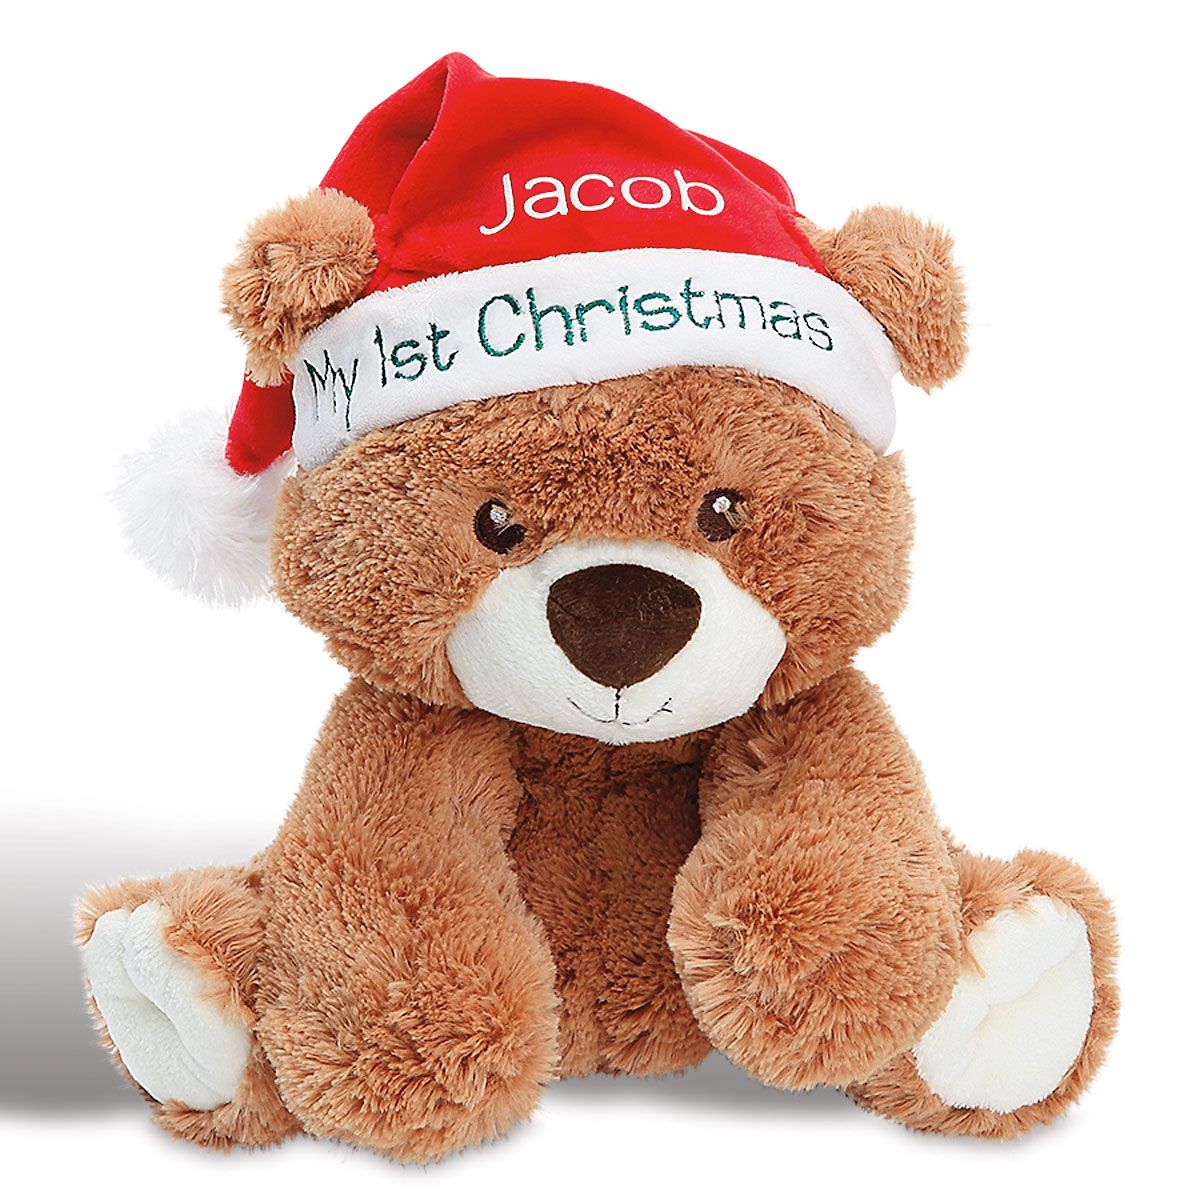 personalized christmas stuffed animals